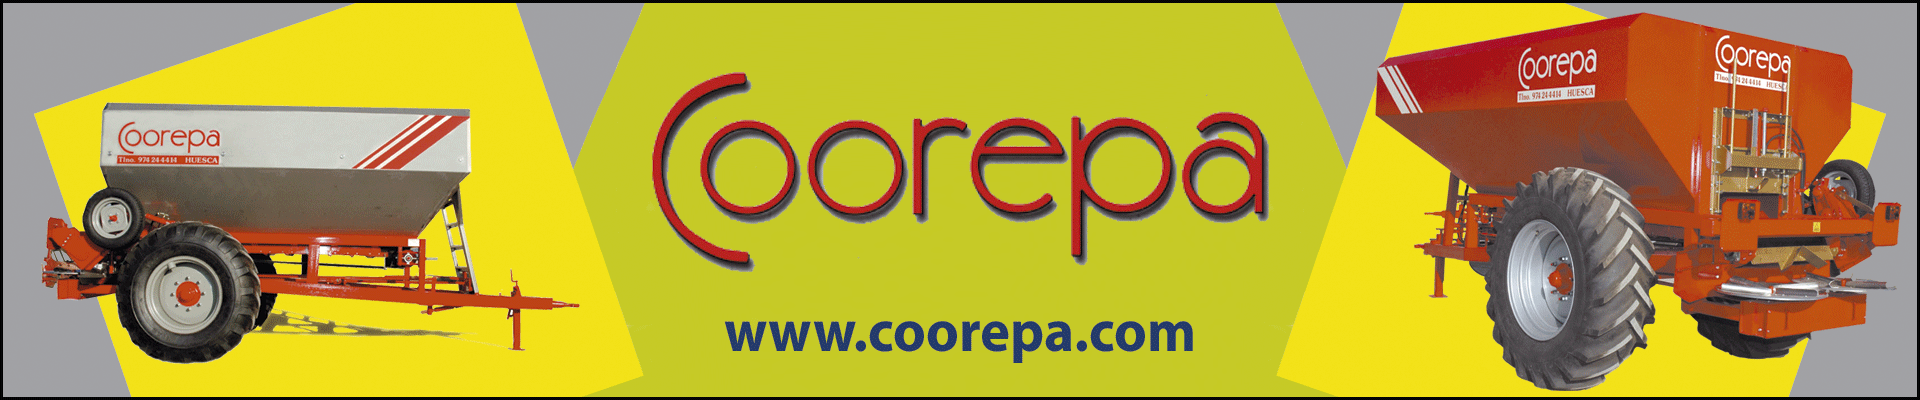 Web Coorepa.Venta, reparación y repuestos para cosechadoras IASA, abonadoras de sólidos, cultivadores chisels, subsoladores.